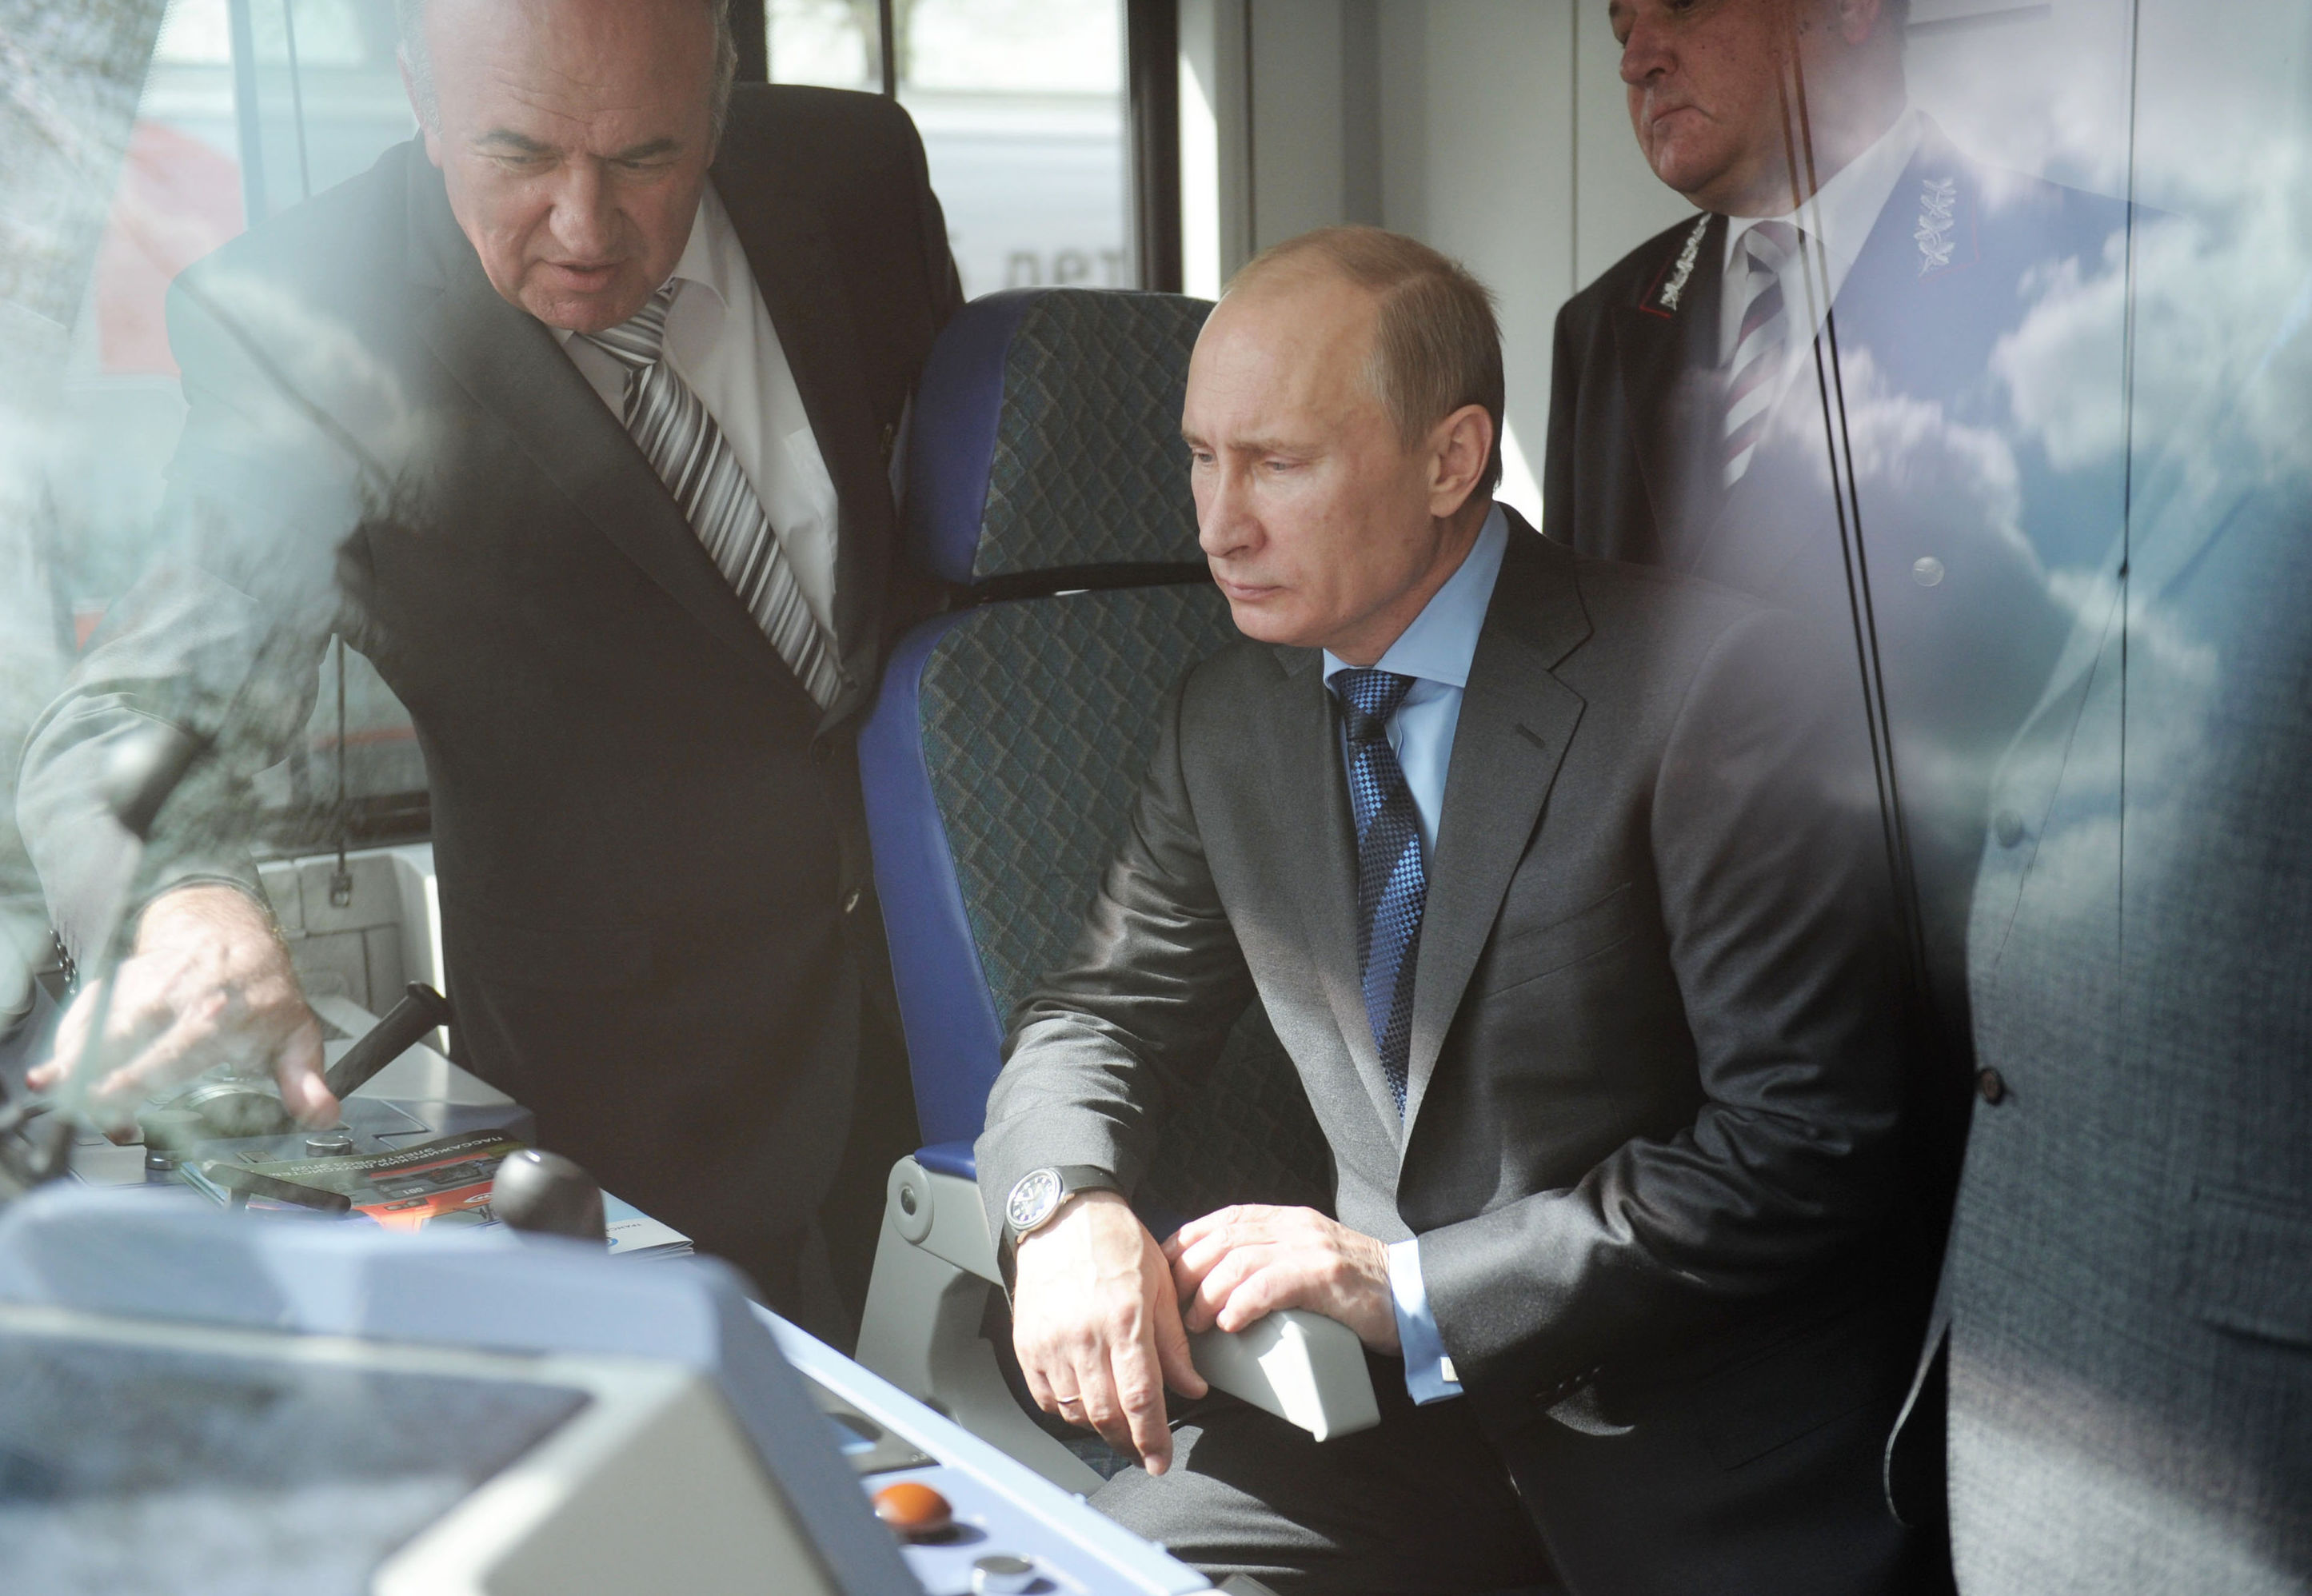 Владимир Путин посещает Центр научно-технического развития ОАО "Российские железные дороги"